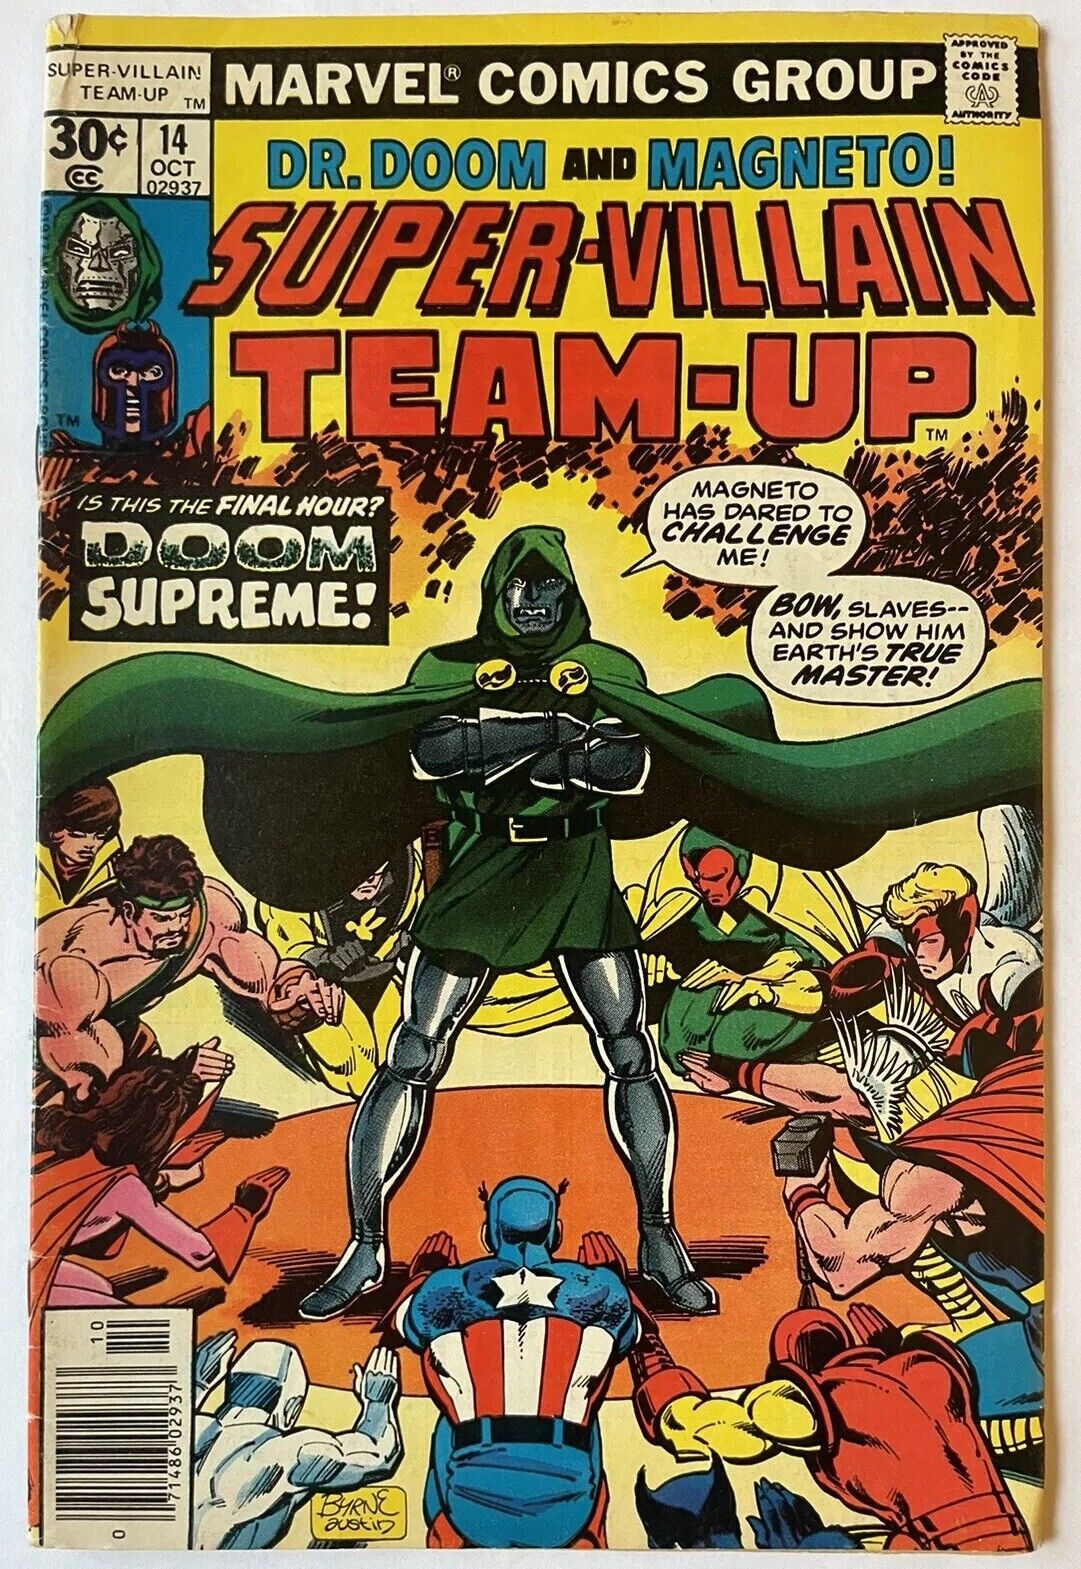 Super-Villain Team-Up #14 • Classic John Byrne Dr Doom Cover (Marvel 1977)